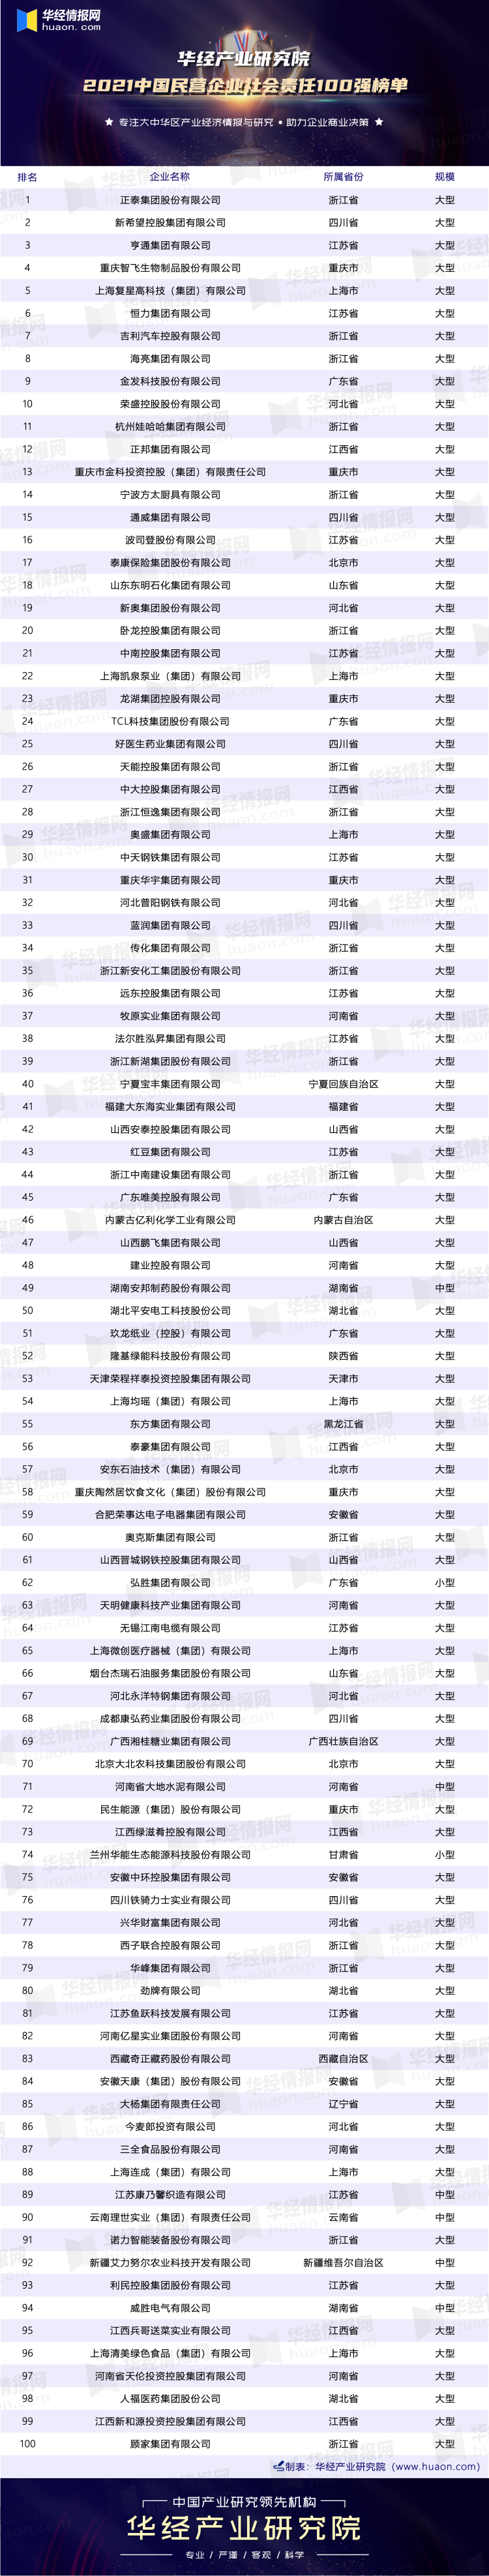 2021中国民营企业社会责任100强榜单